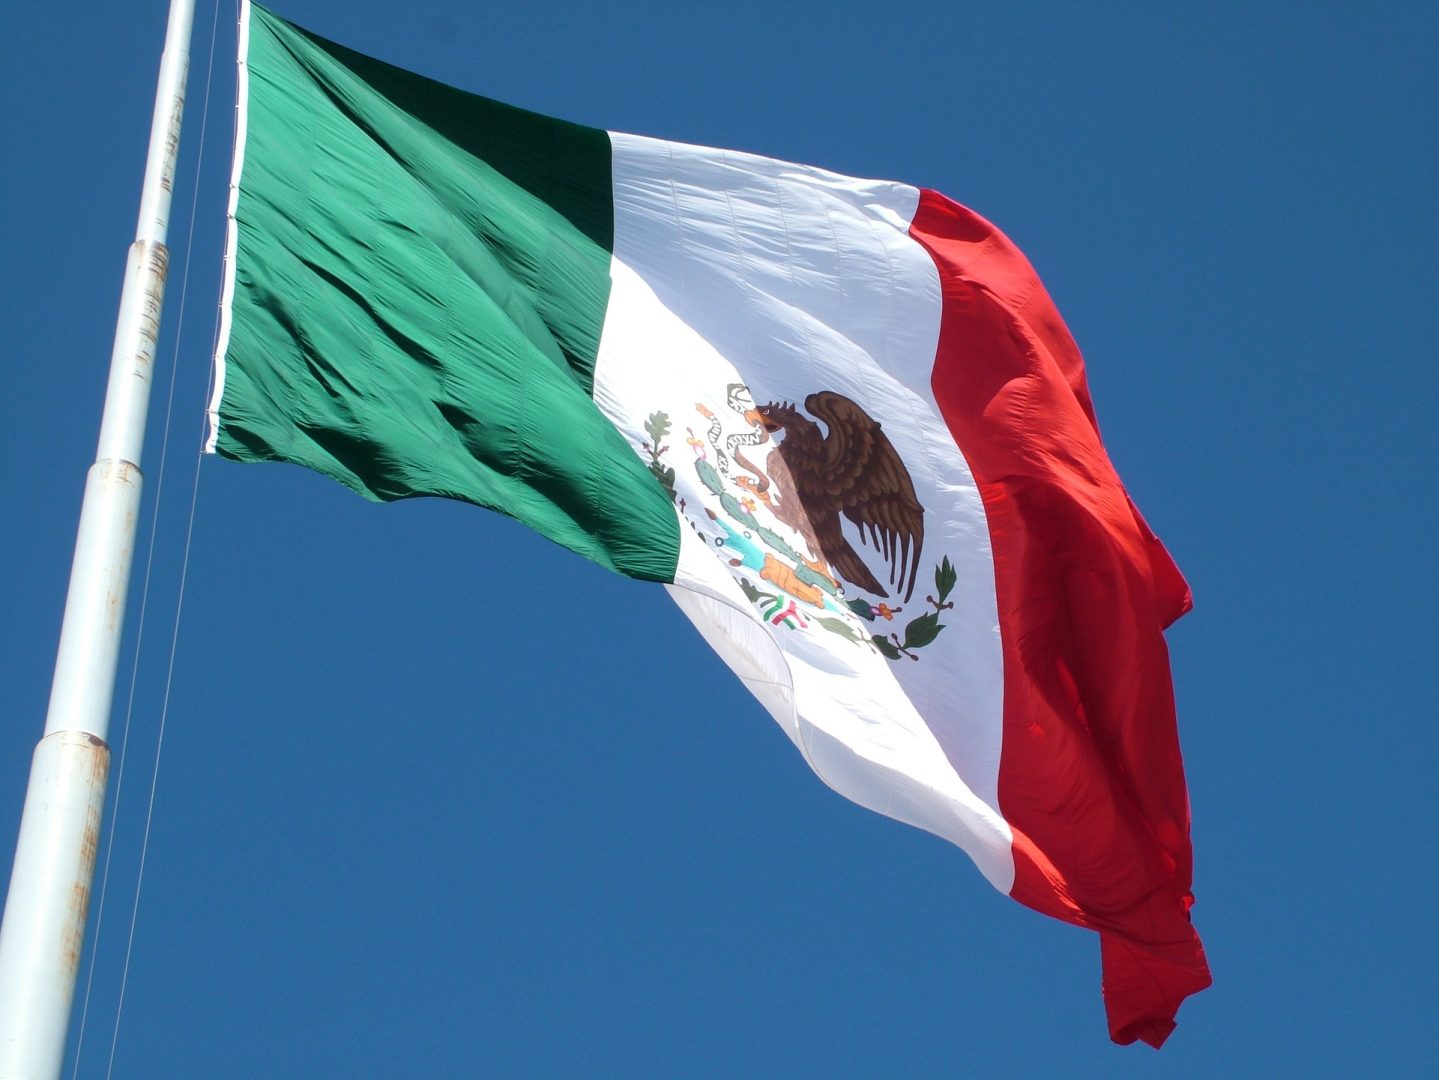 Четирима полицаи загинаха при престрелка с престъпна банда в Мексико